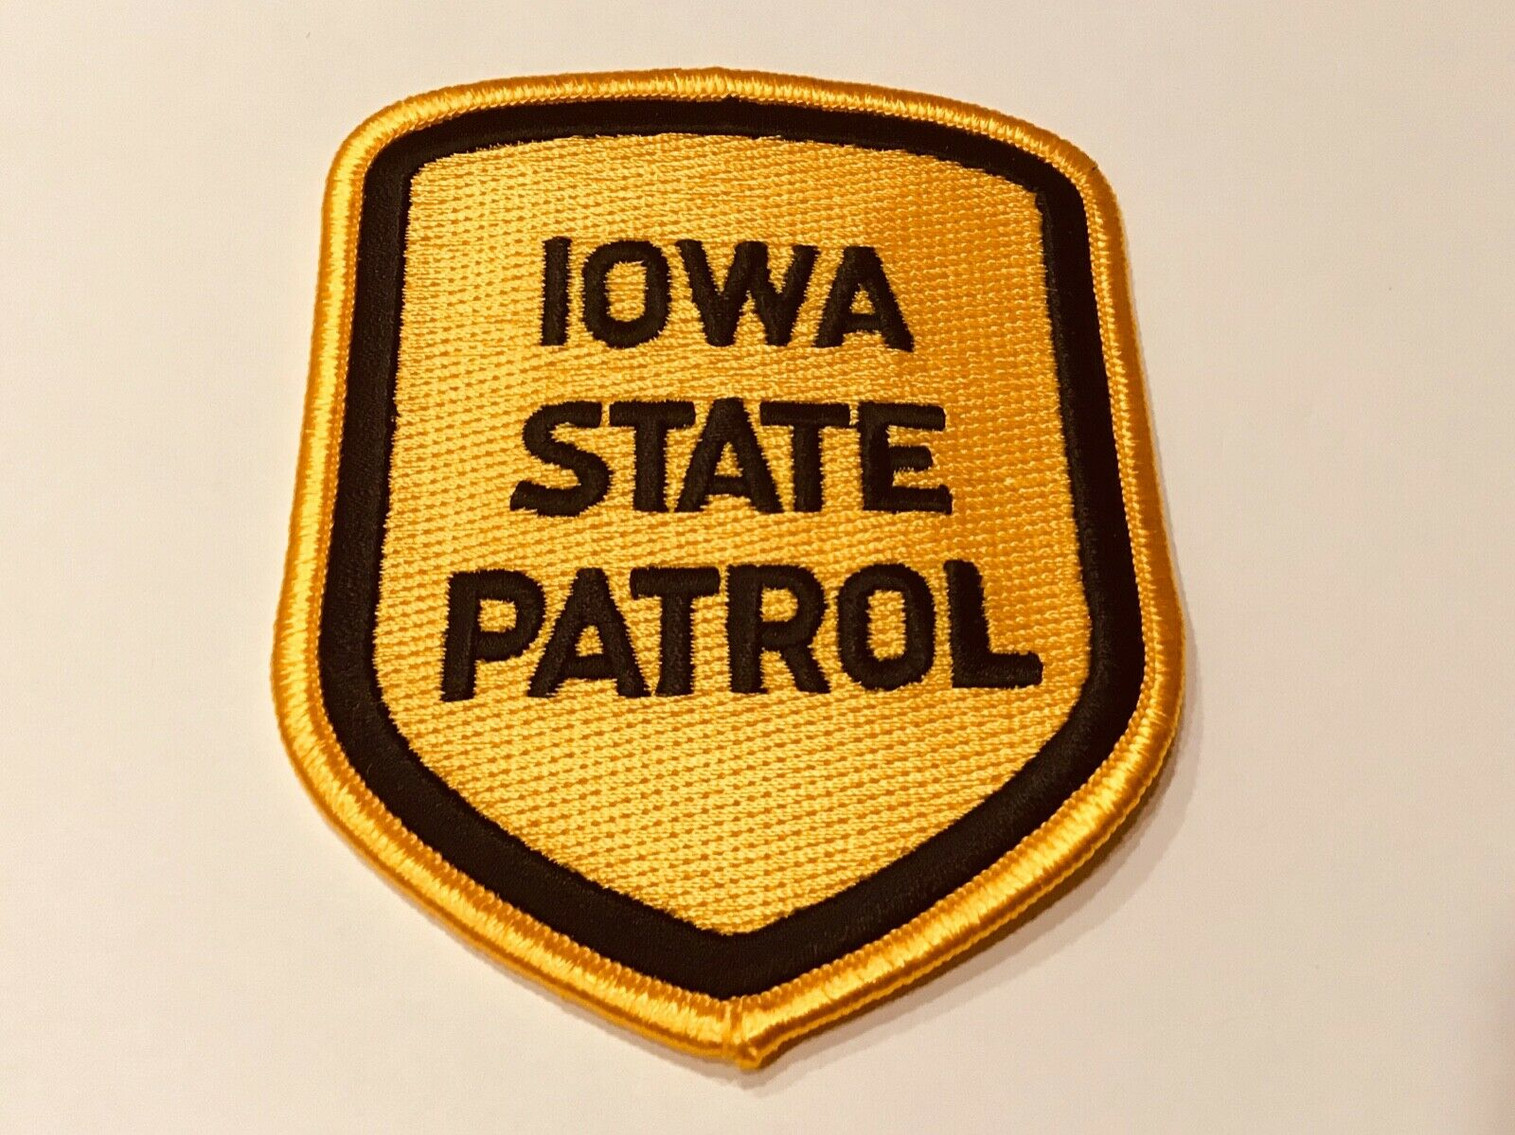 Iowa State Patrol Police Patch